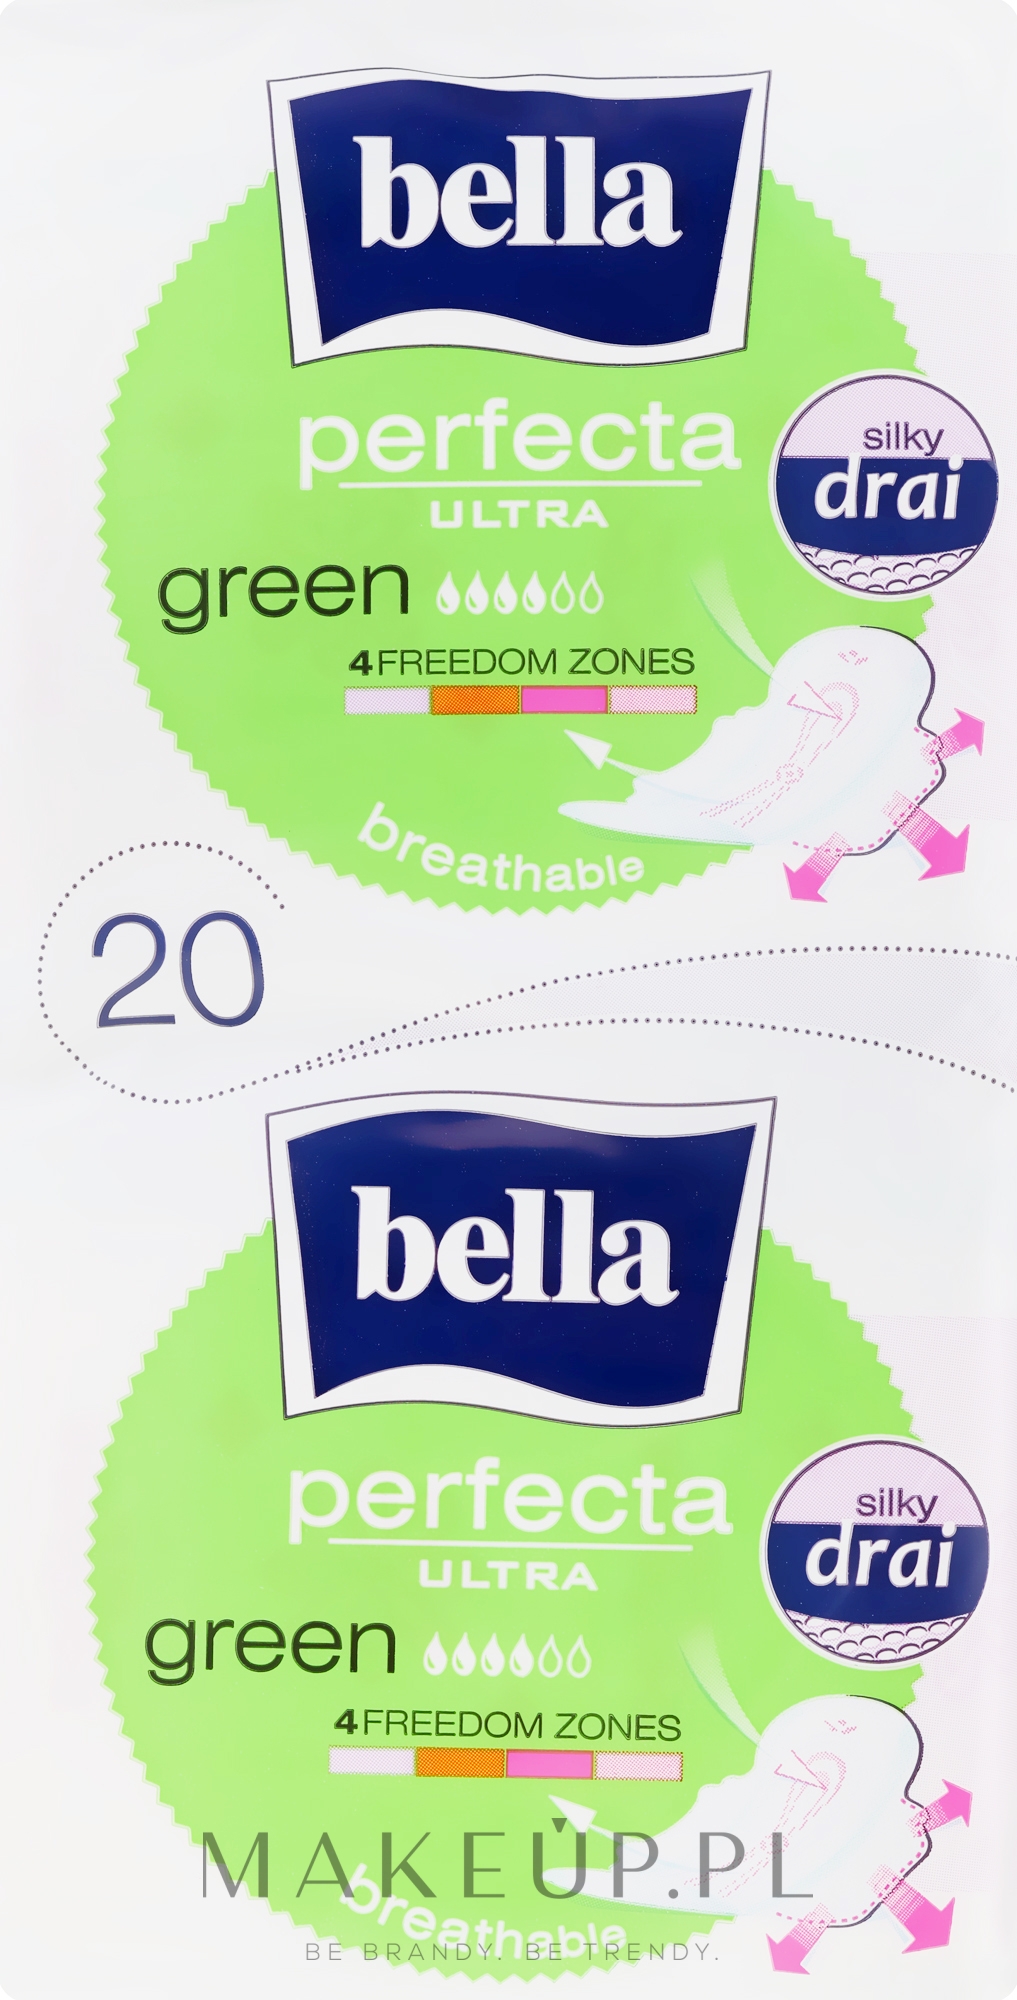 Podpaski Perfecta Green Drai Ultra, 2x10 szt. - Bella — Zdjęcie 20 szt.